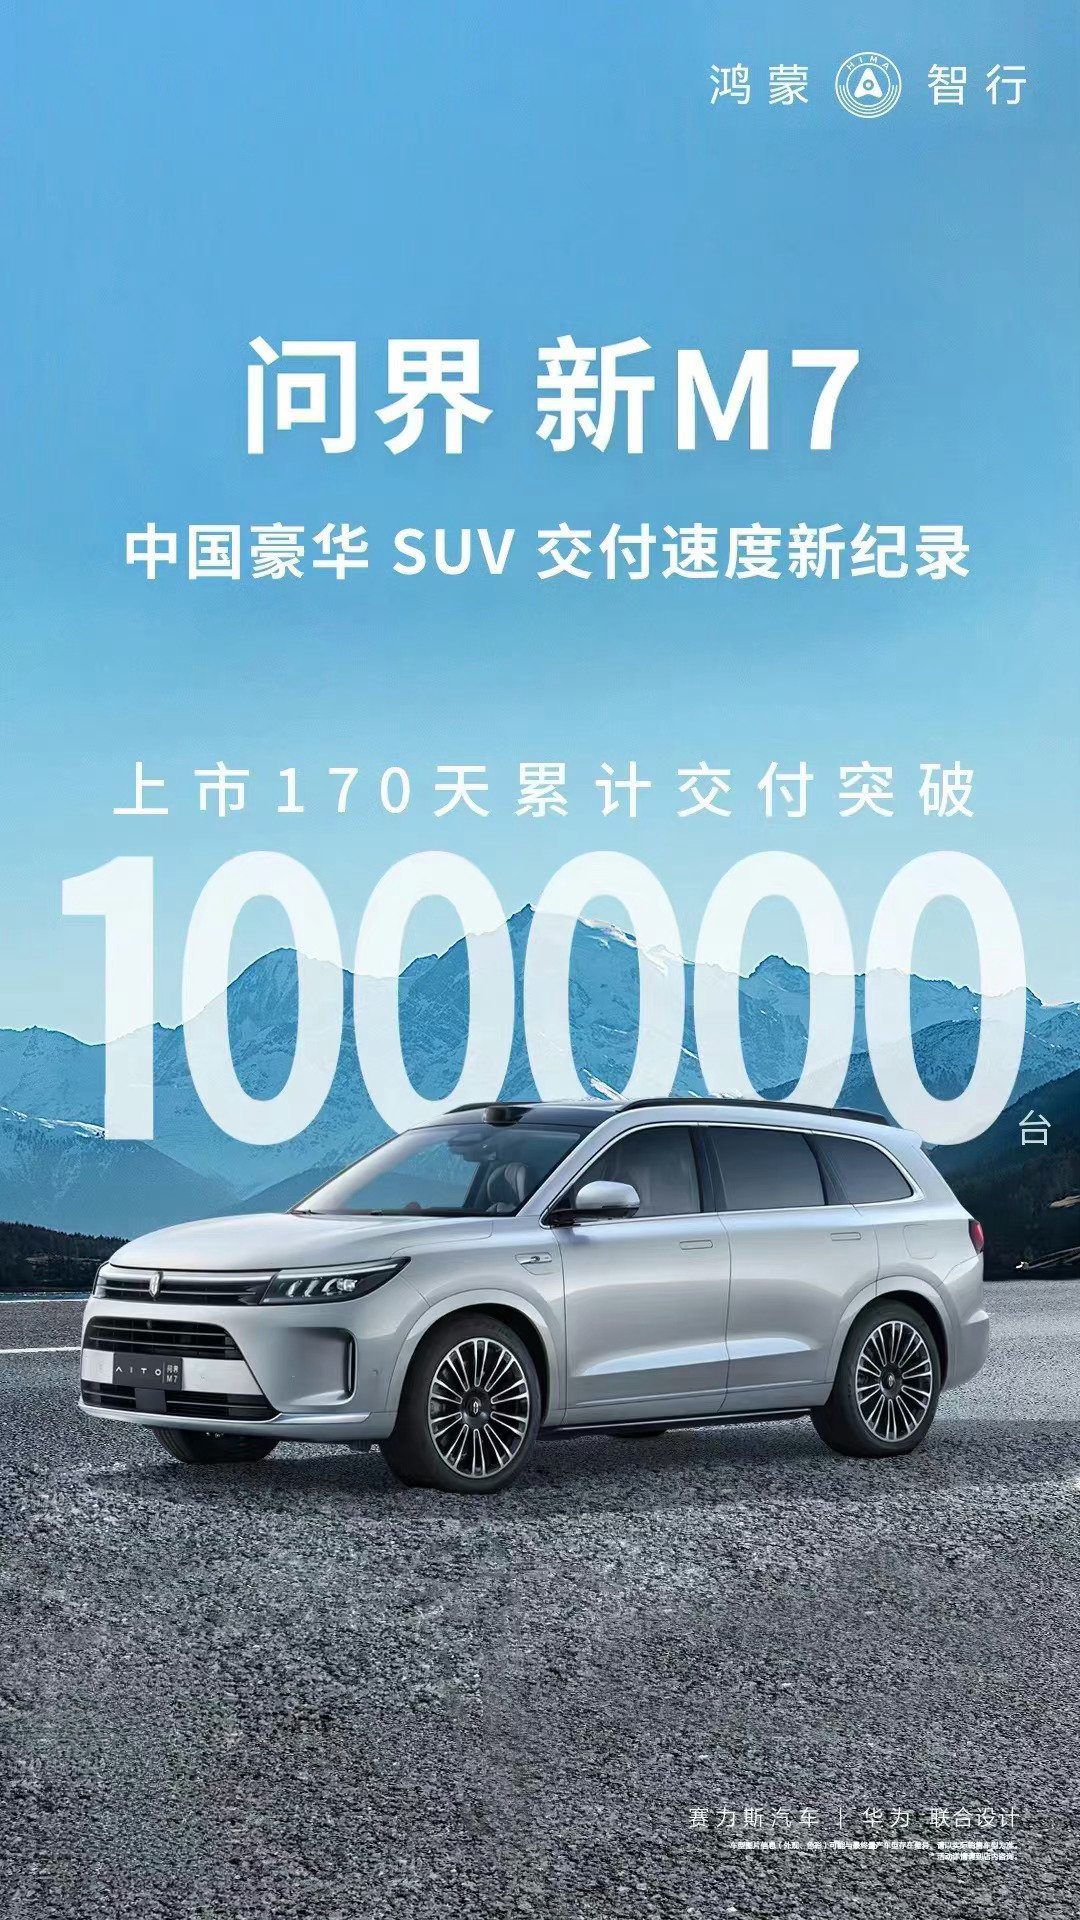 【爱车基地】AITO 问界新 M7 车型上市 170 天累计交付超 10 万台